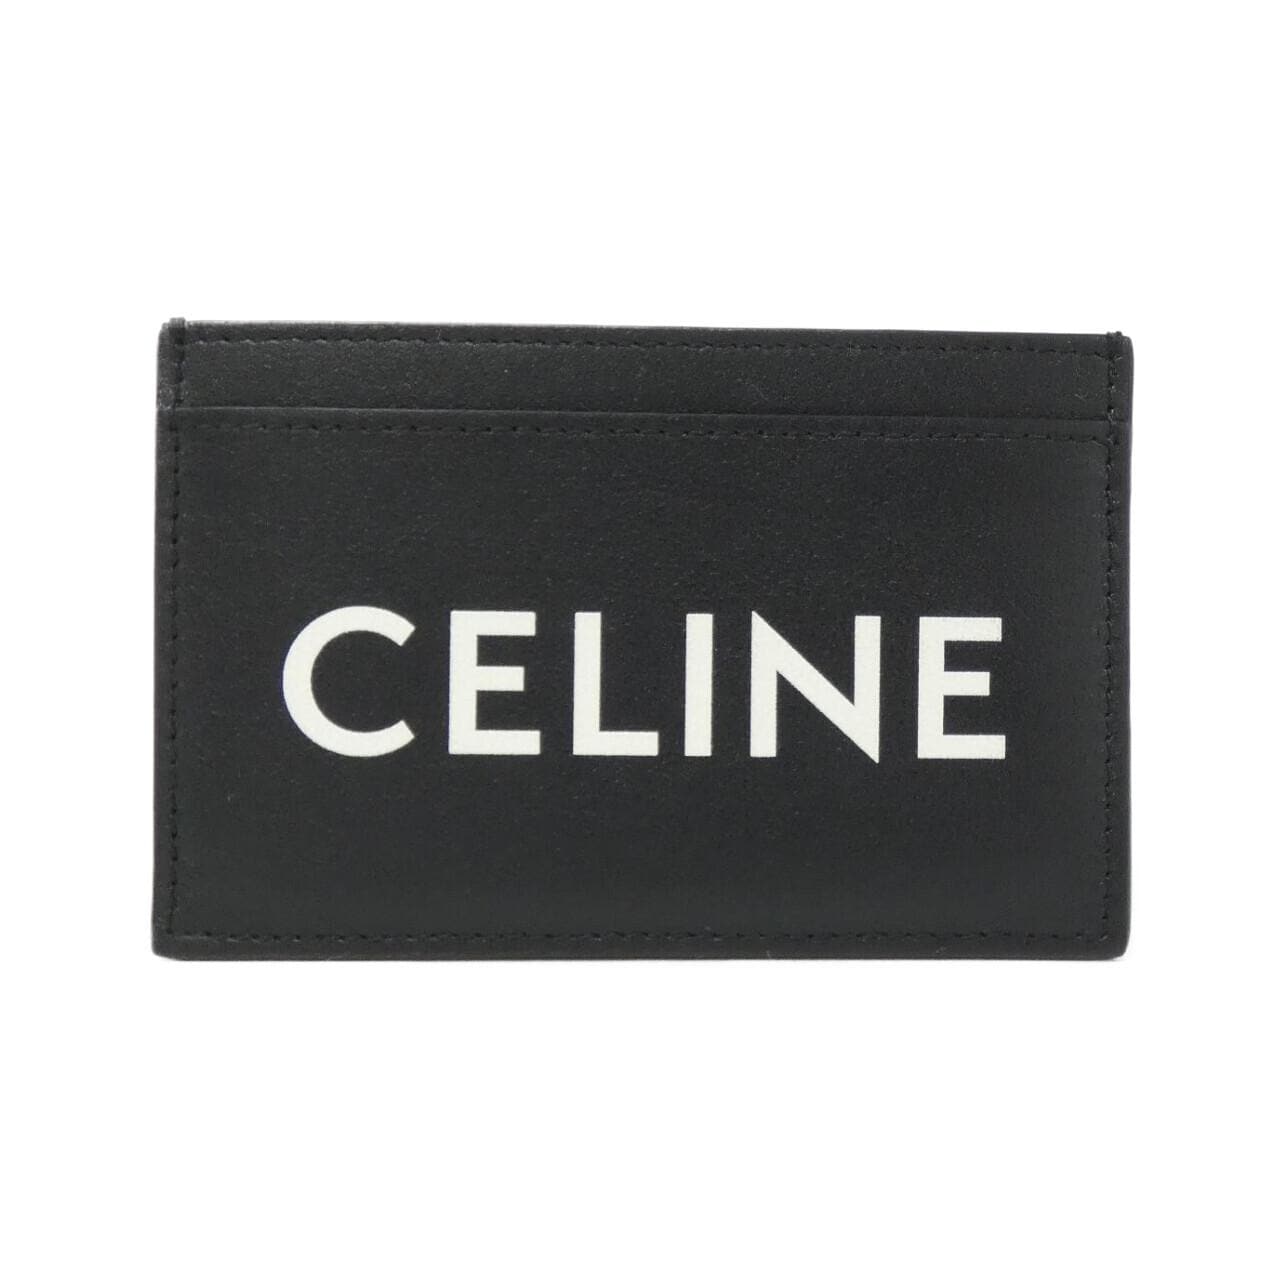 セリーヌ 10B703DMF カードケース